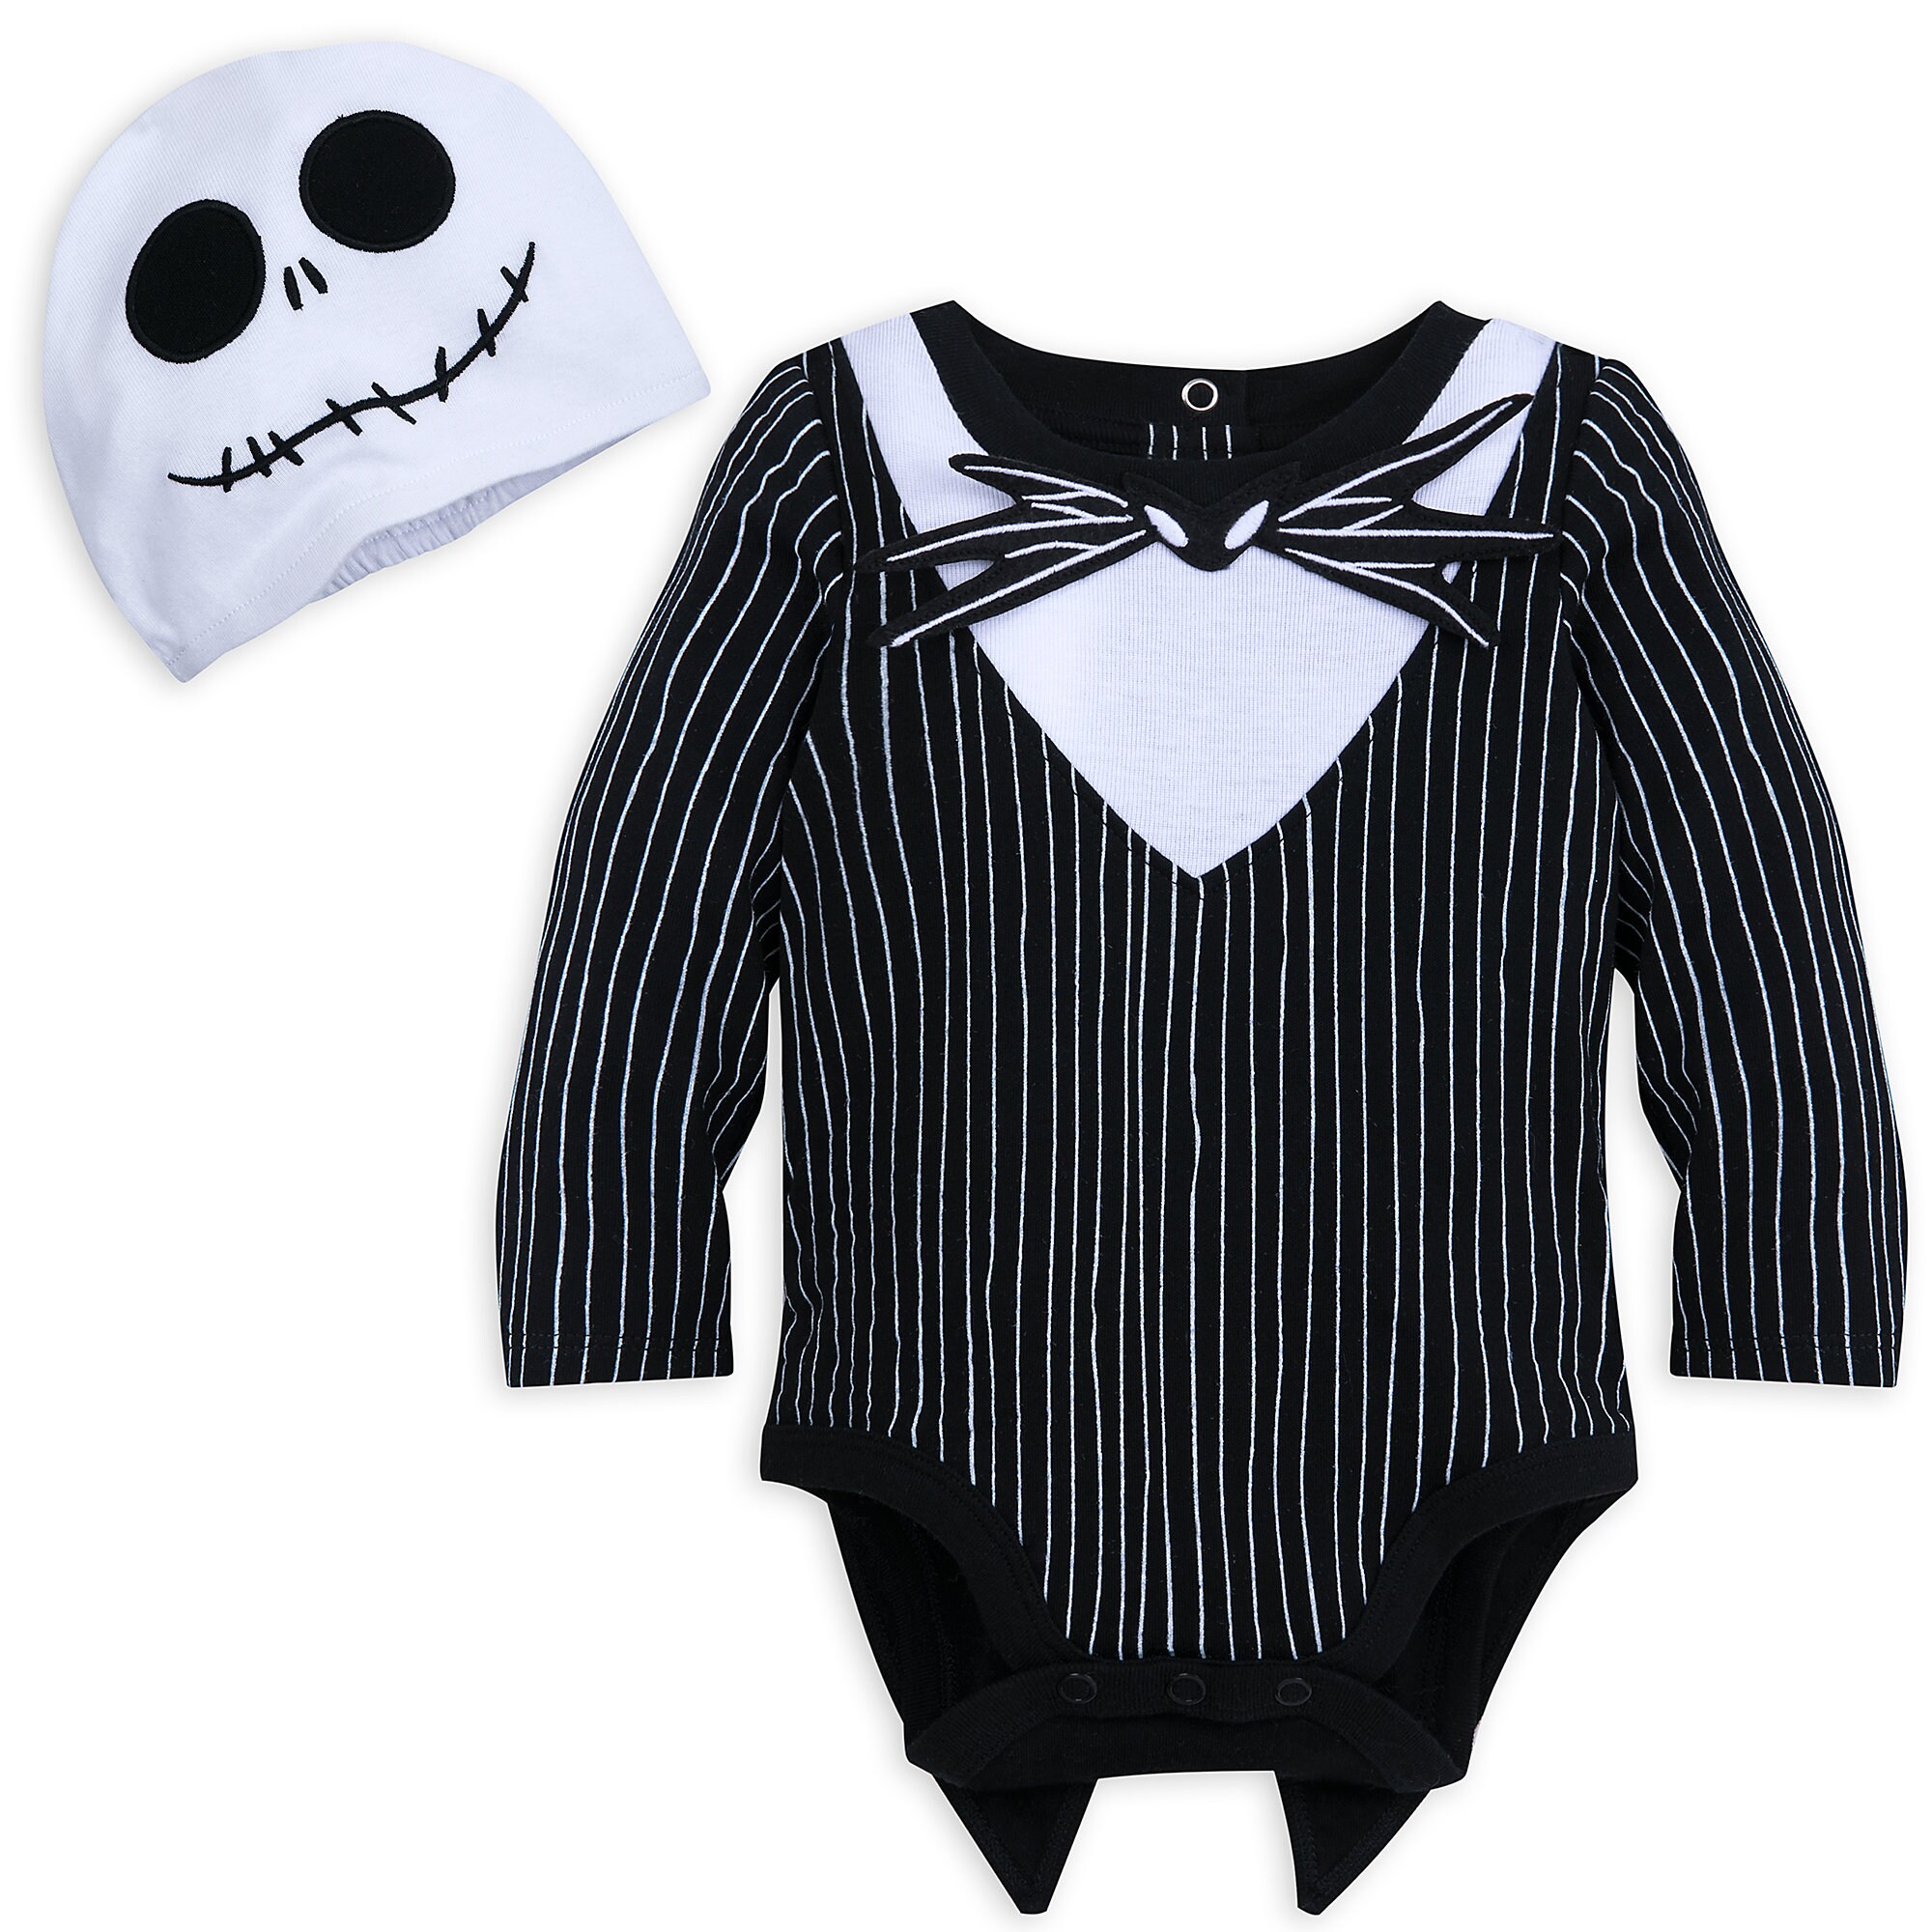 Jack Skellington Costume Bodysuit Set for Baby